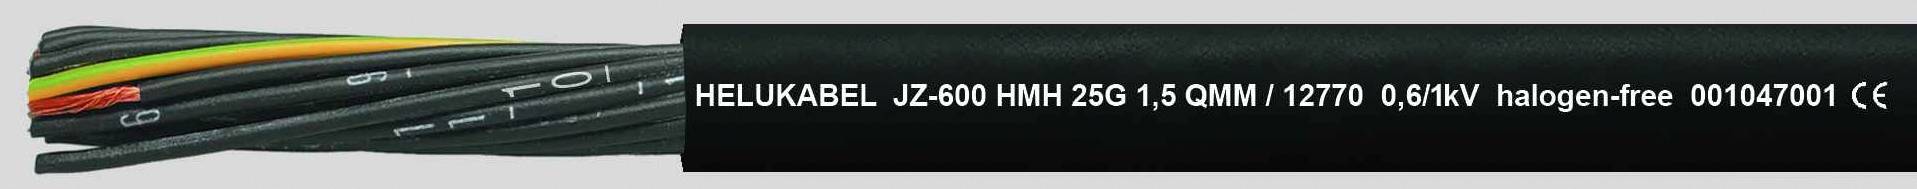 HELUKABEL JZ-600 HMH Steuerleitung 4 G 0.75 mm² Schwarz 12738-500 500 m